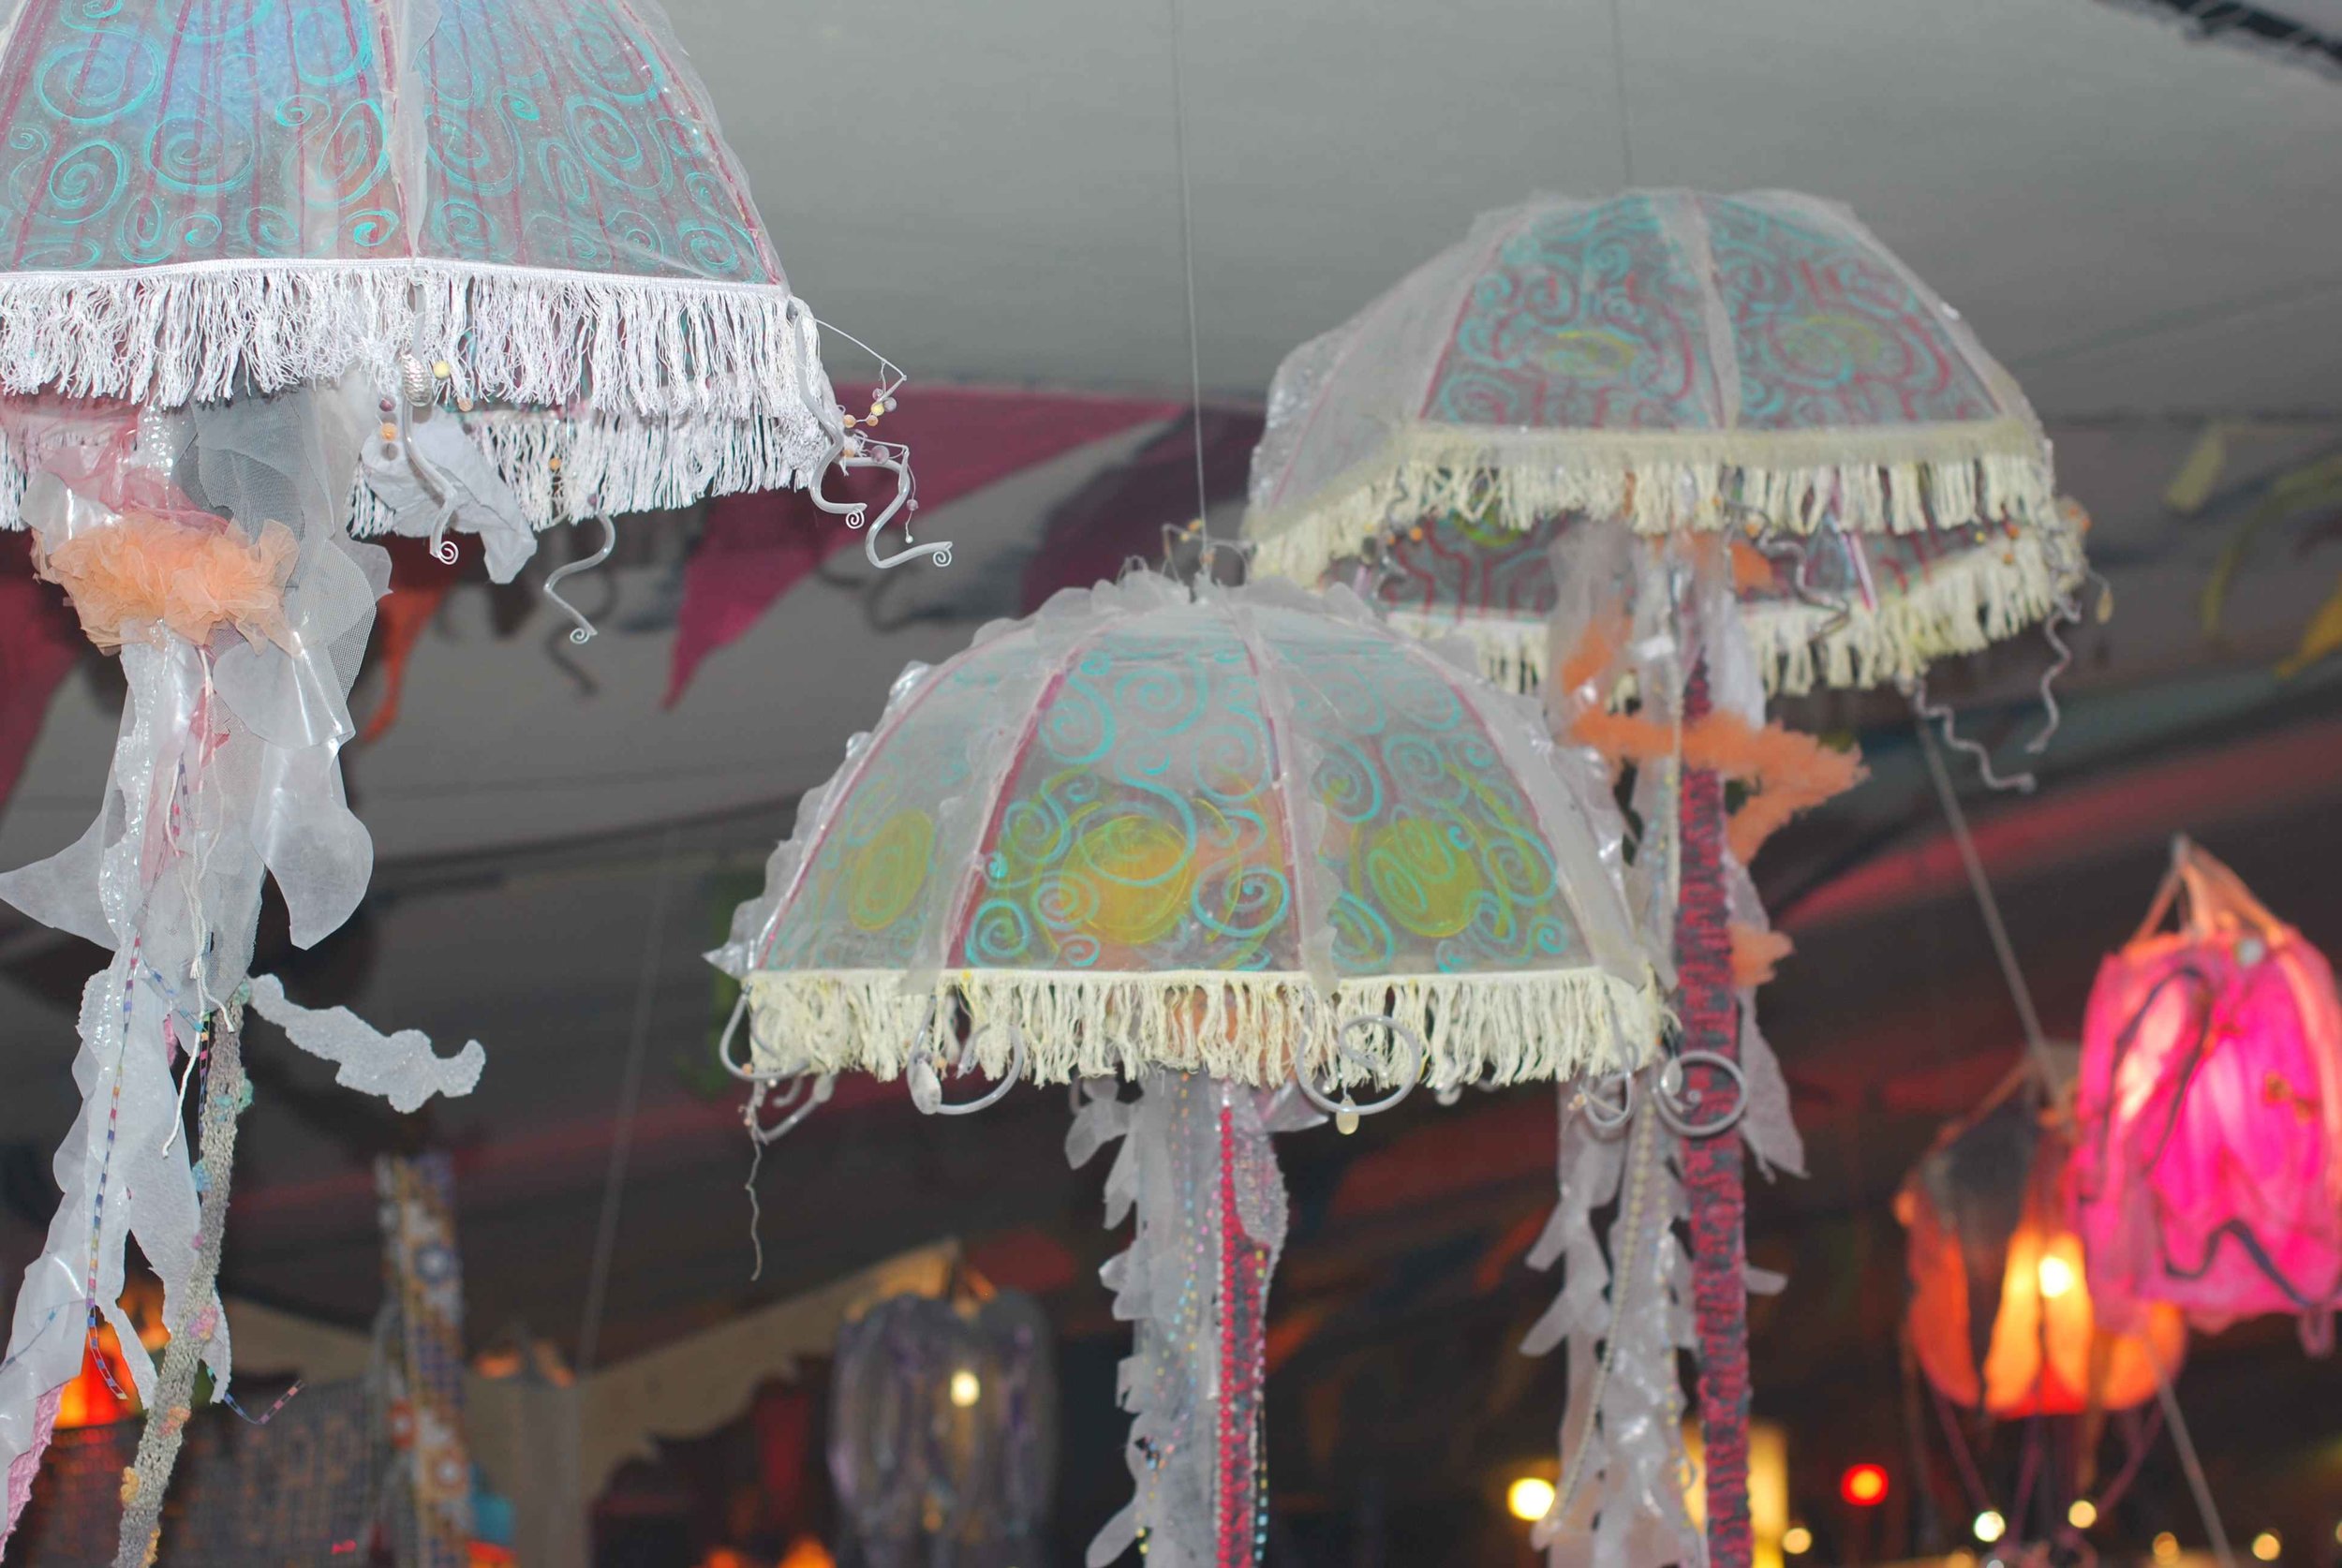 Jellyfish at Burning Man - main tent